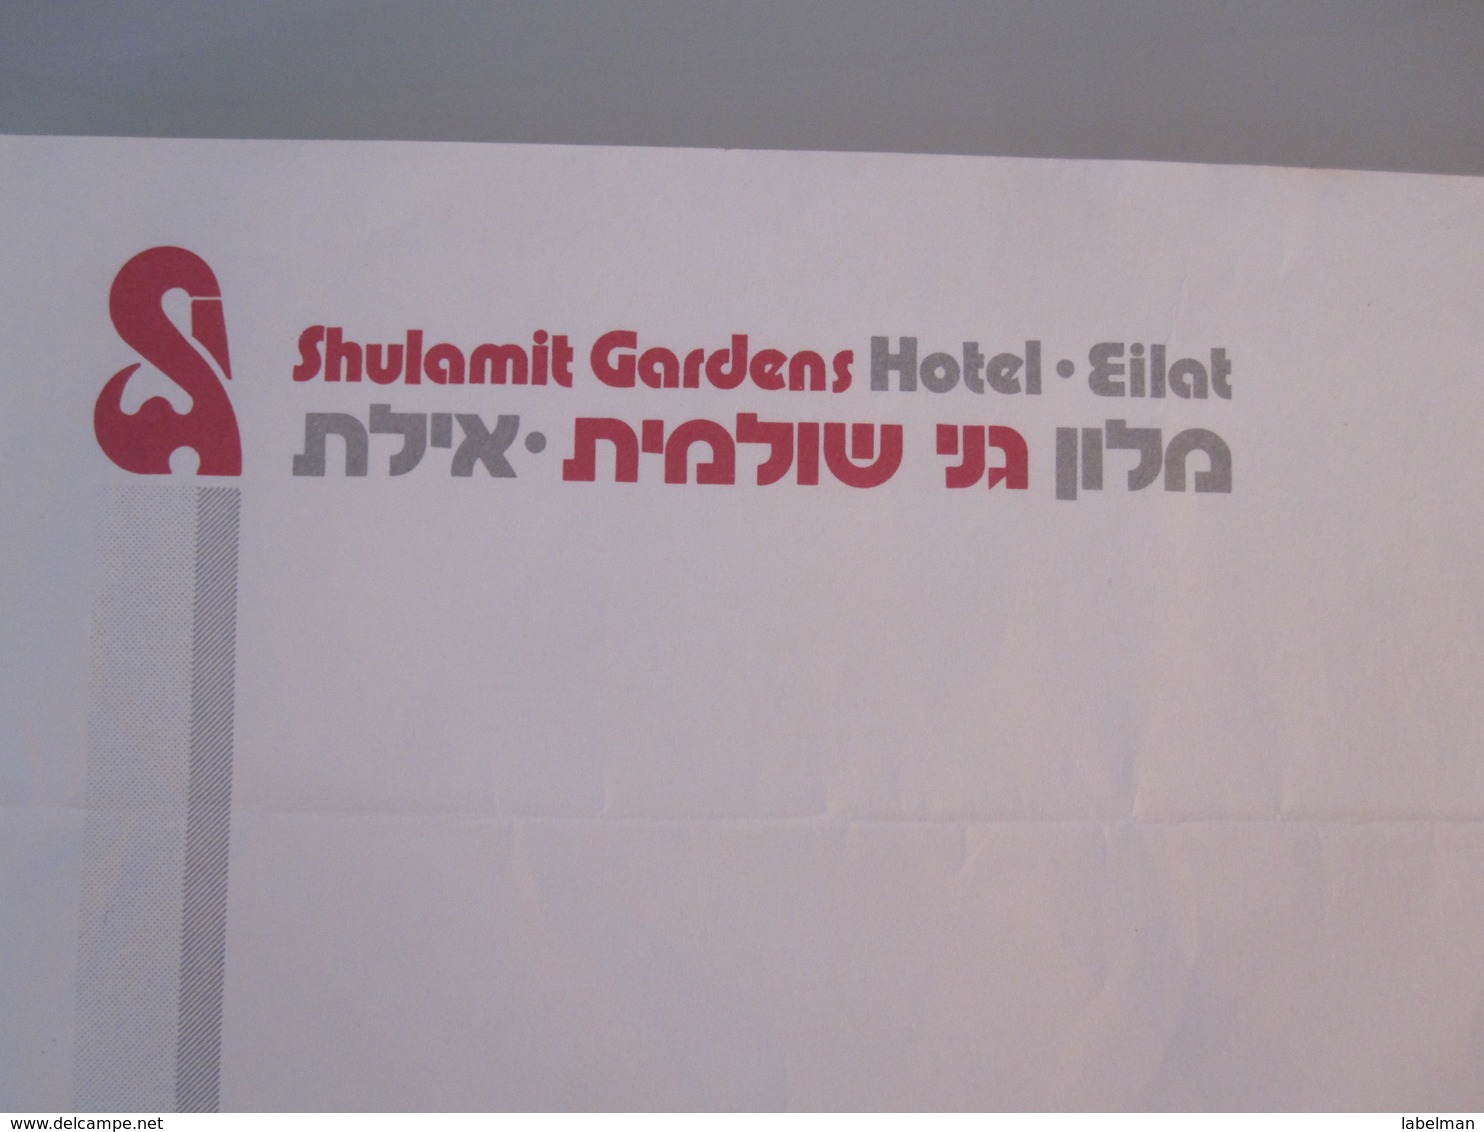 ISRAEL PALESTINE HOTEL HOSTEL GUEST REST HOUSE INN RED SEA EILAT SHULAMIT GARDENS STATIONERY LETTER DESIGN ORIGINAL LOGO - Etiketten Van Hotels